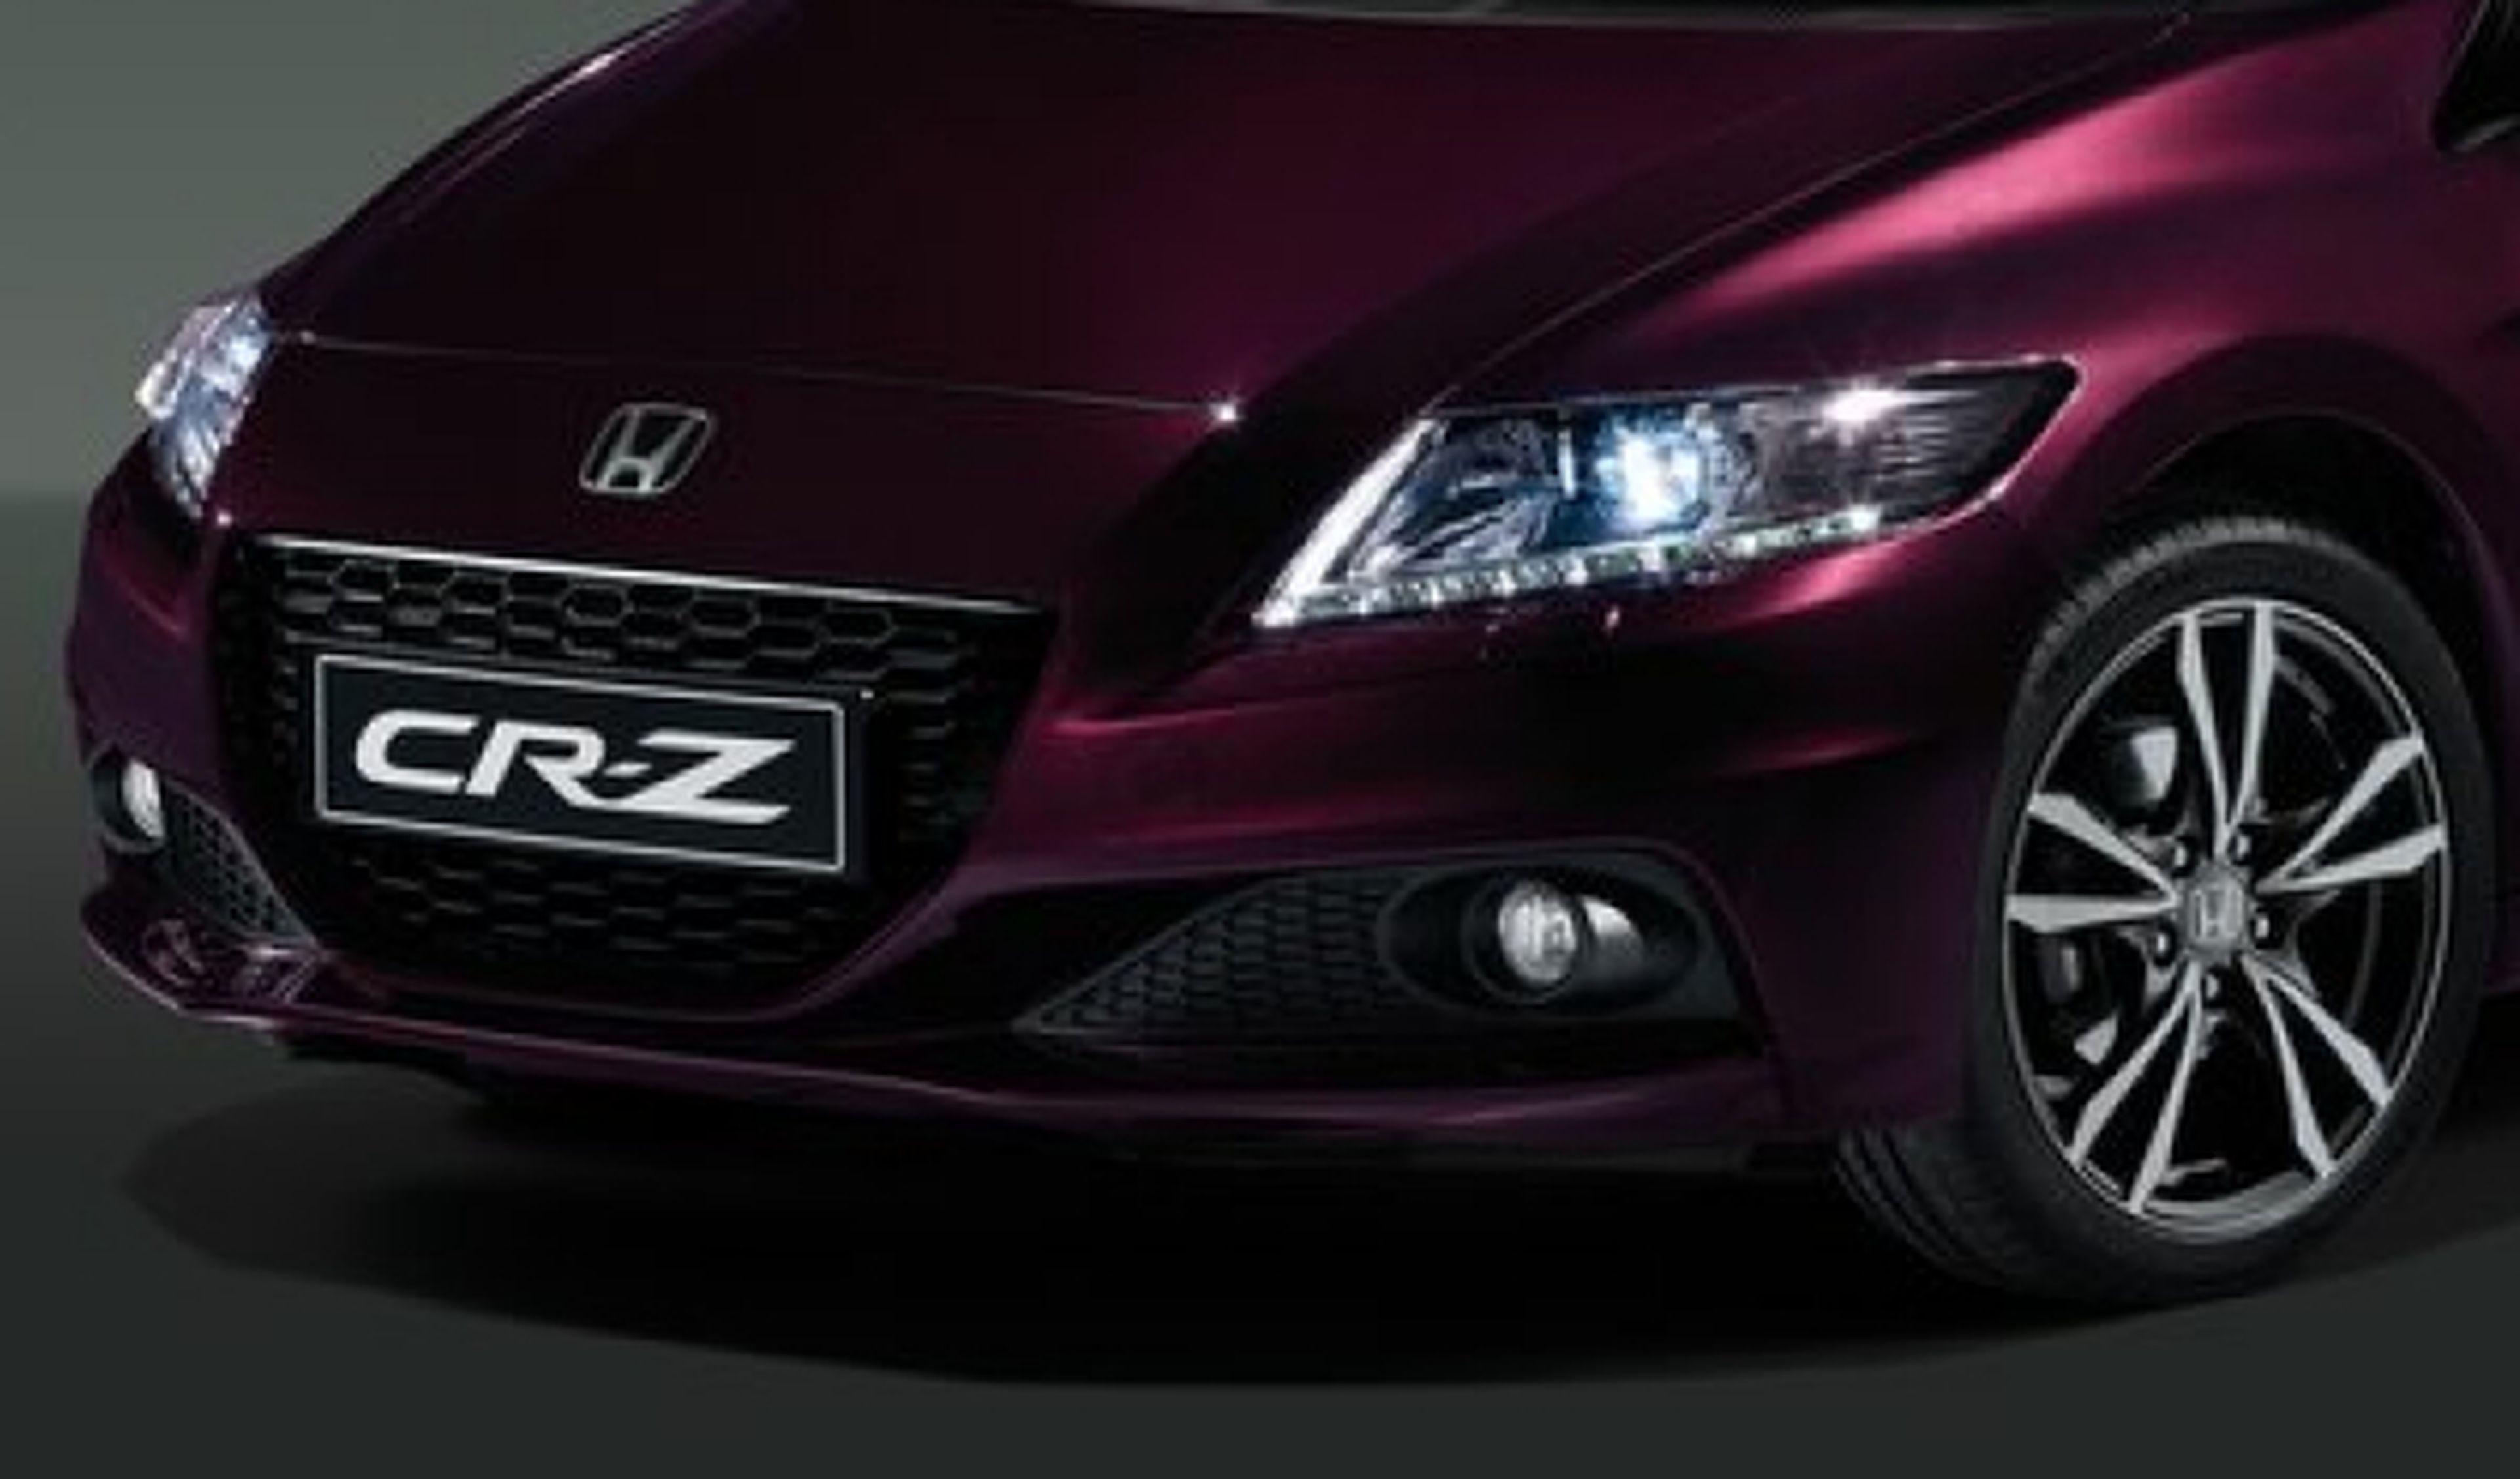 El nuevo Honda CR-Z llegará en 2017 según los rumores